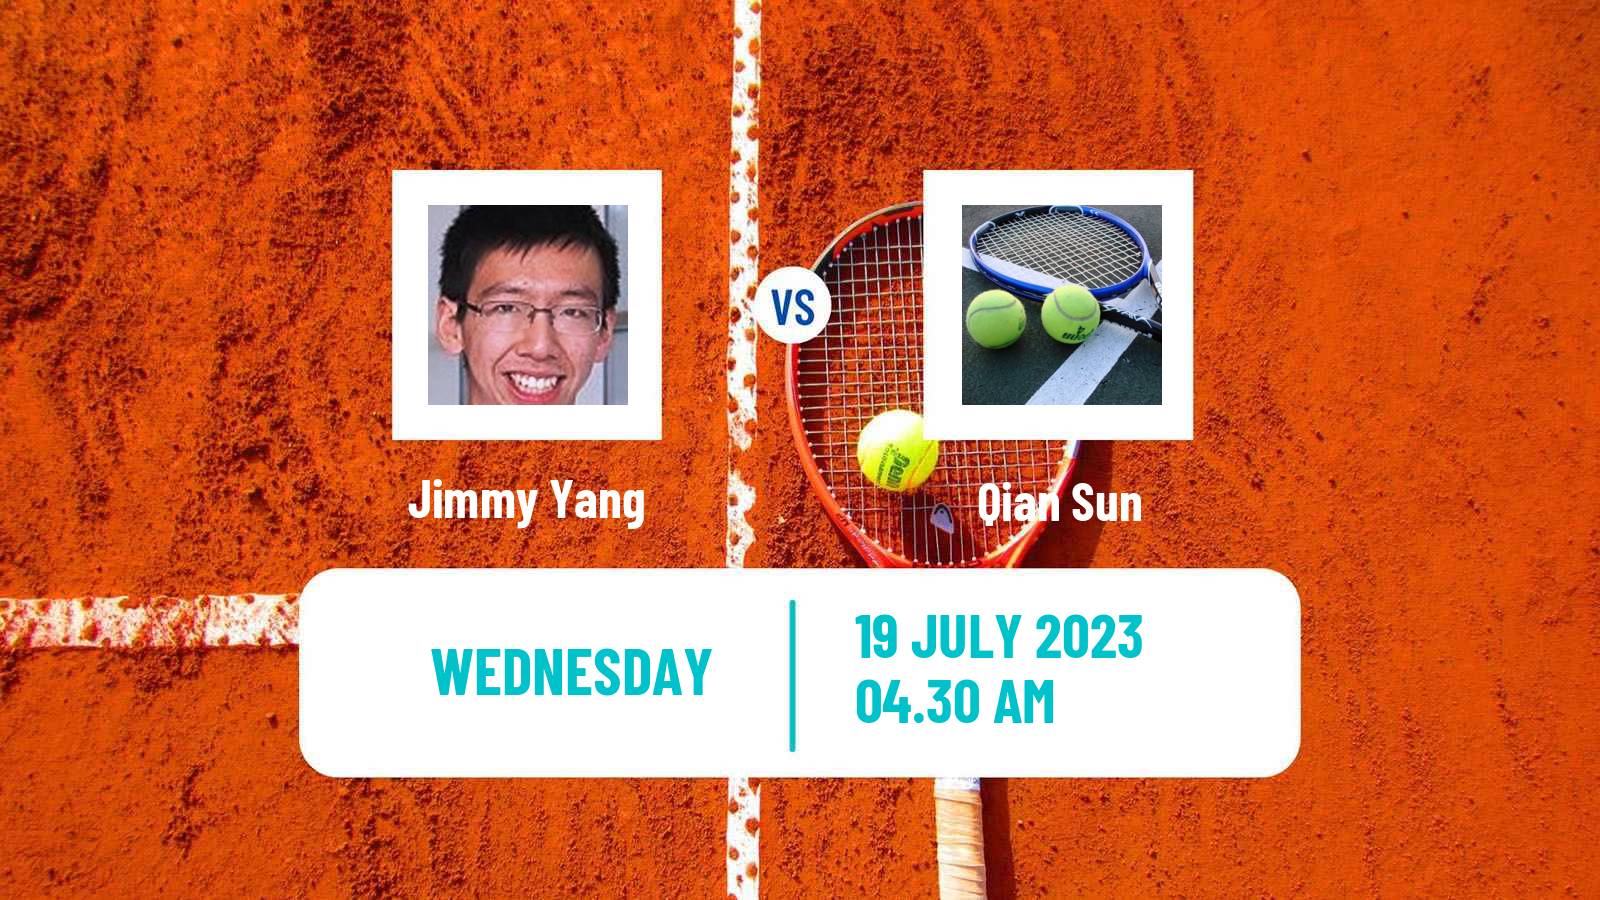 Tennis ITF M25 Fuzhou Men Jimmy Yang - Qian Sun